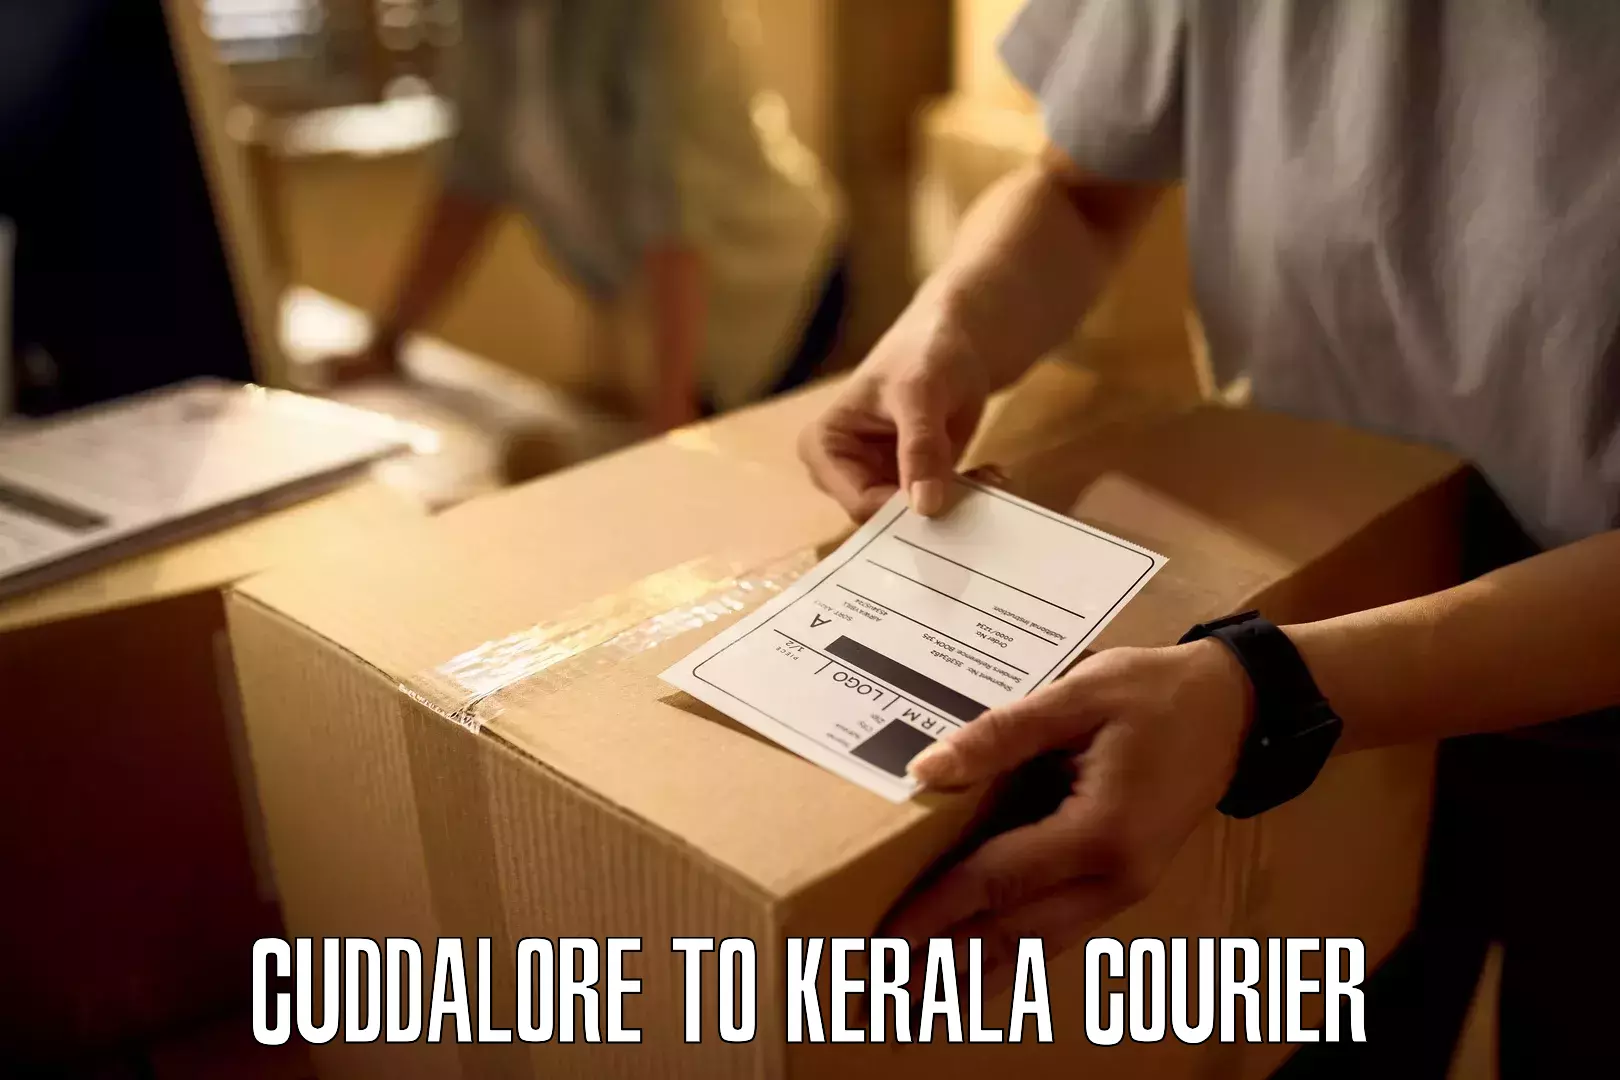 Premium delivery services Cuddalore to Kerala